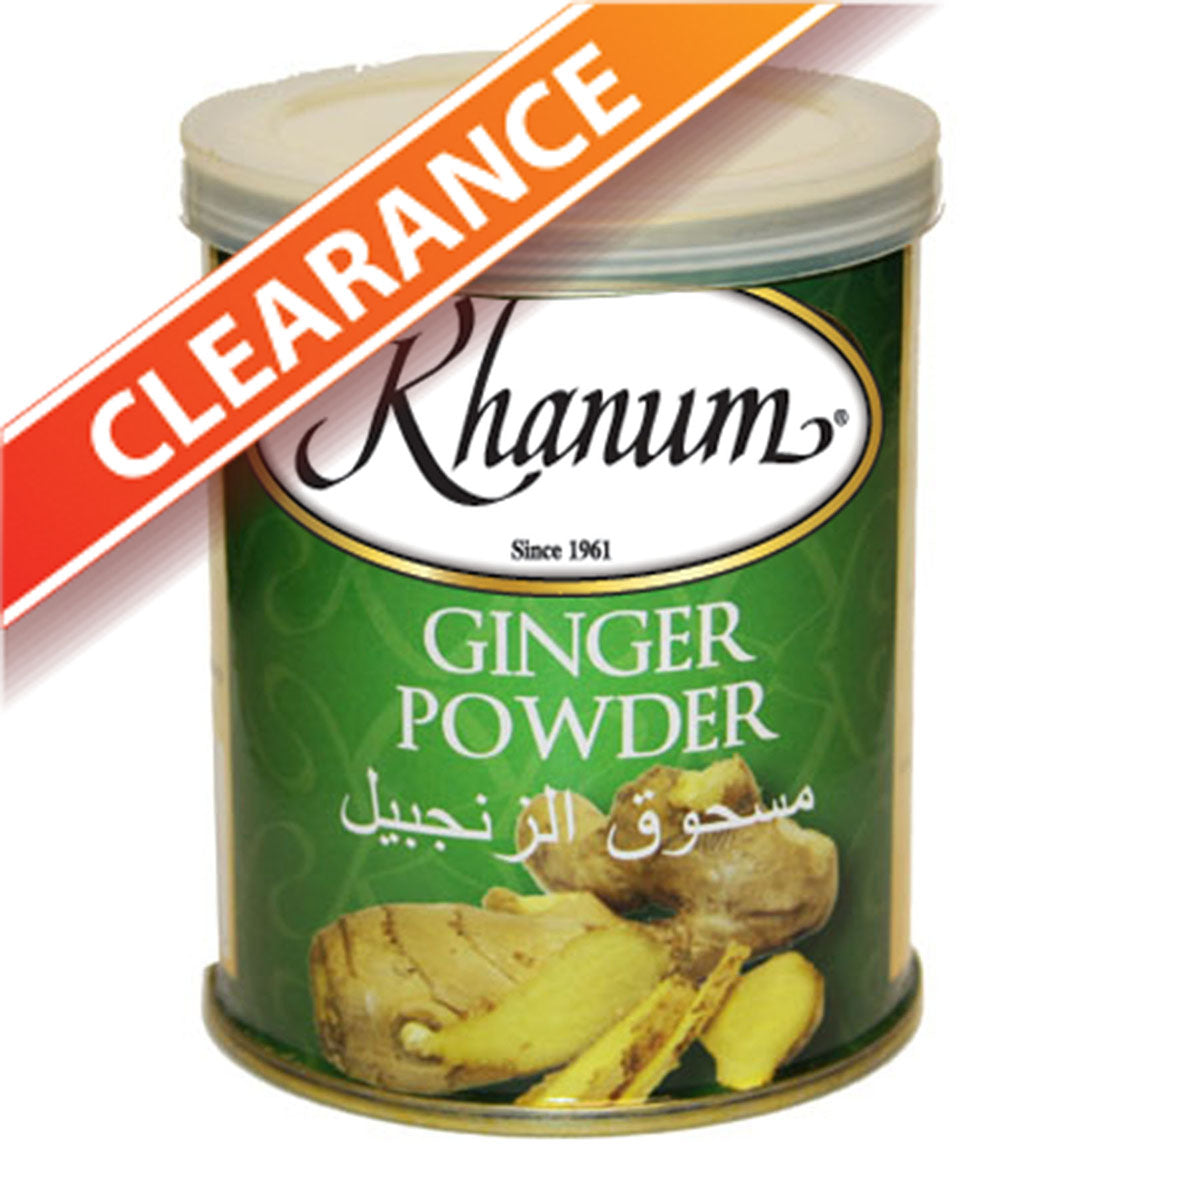 Khanum Ginger Powder 2x6x100g BBE:10/23